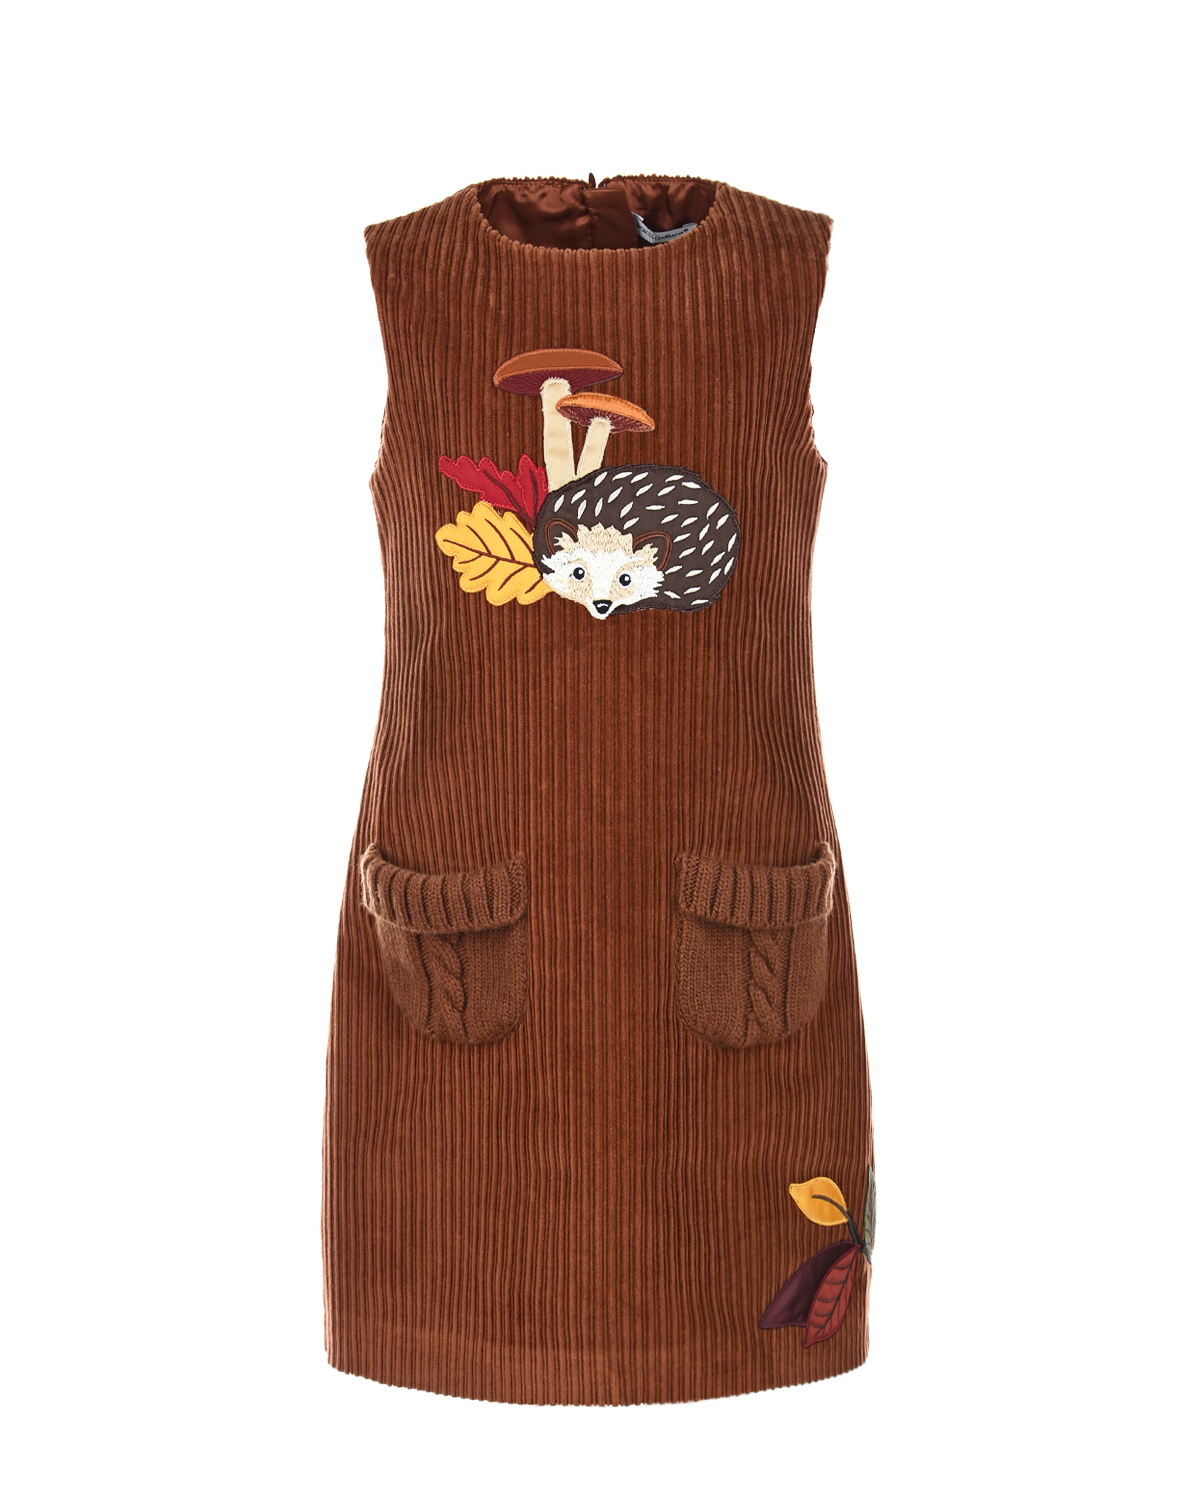 Сарафан с аппликациями Dolce&Gabbana детский, размер 98, цвет коричневый - фото 1